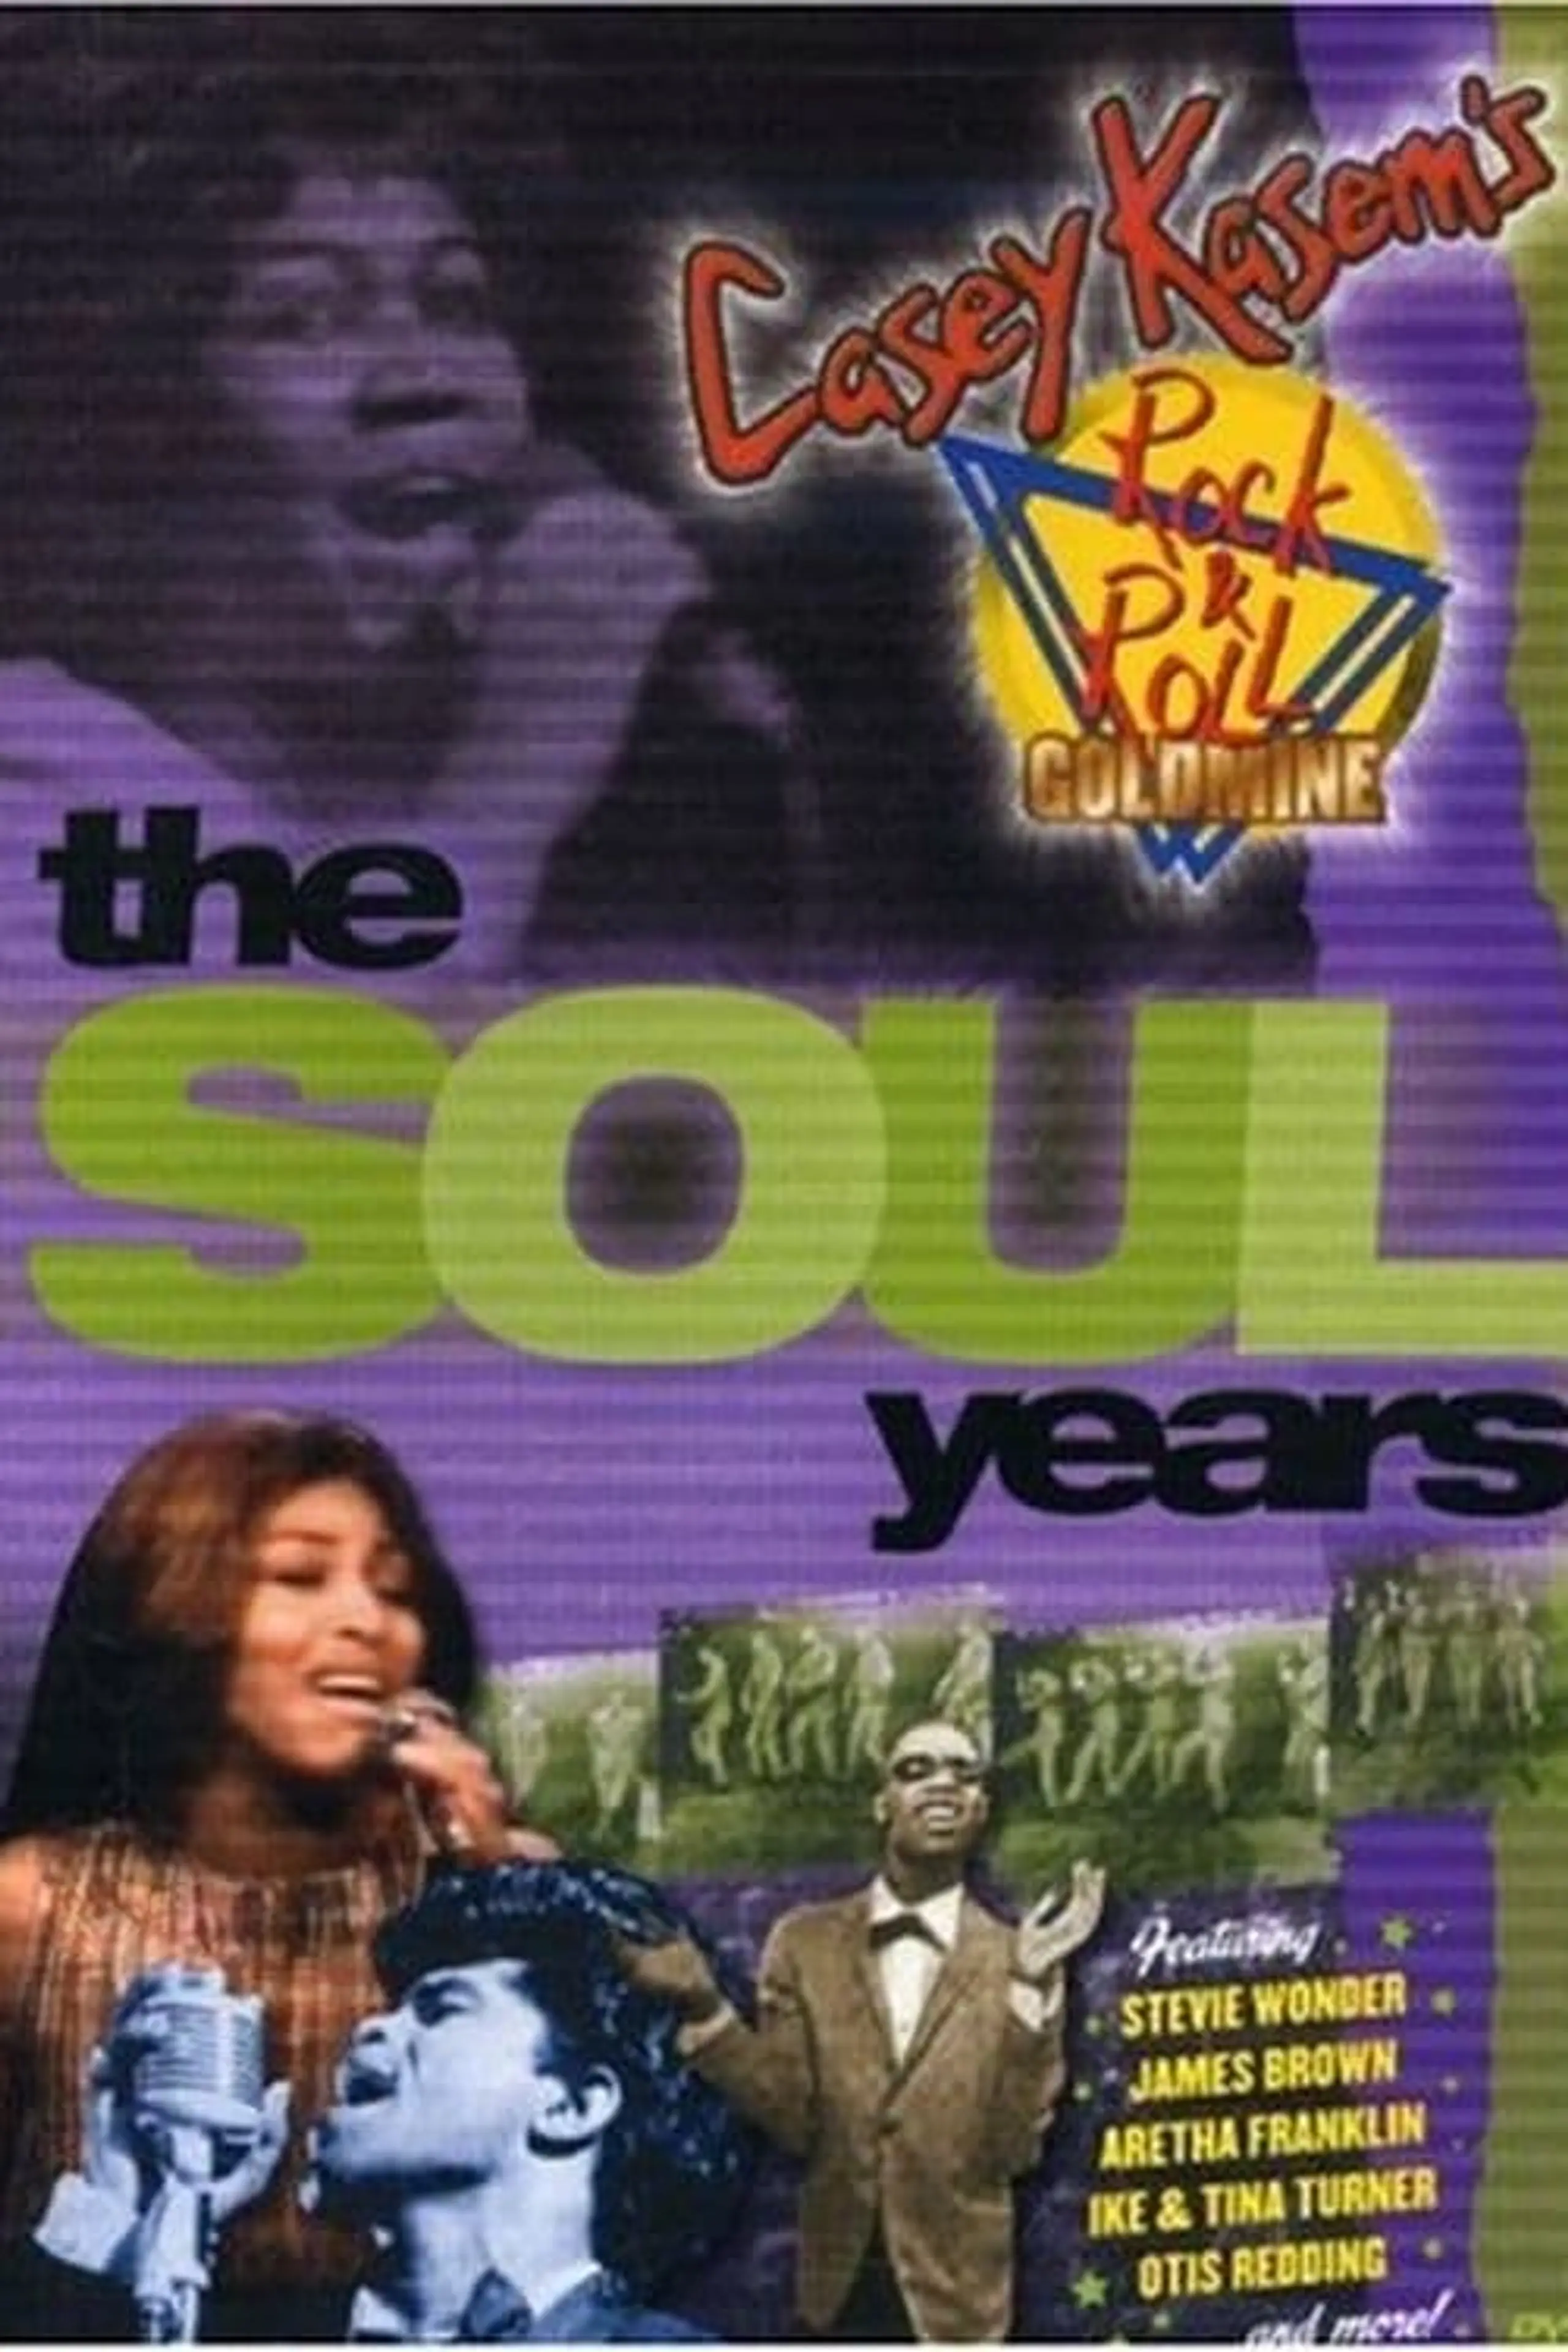 Casey Kasem's Rock N' Roll Goldmine: The Soul Years